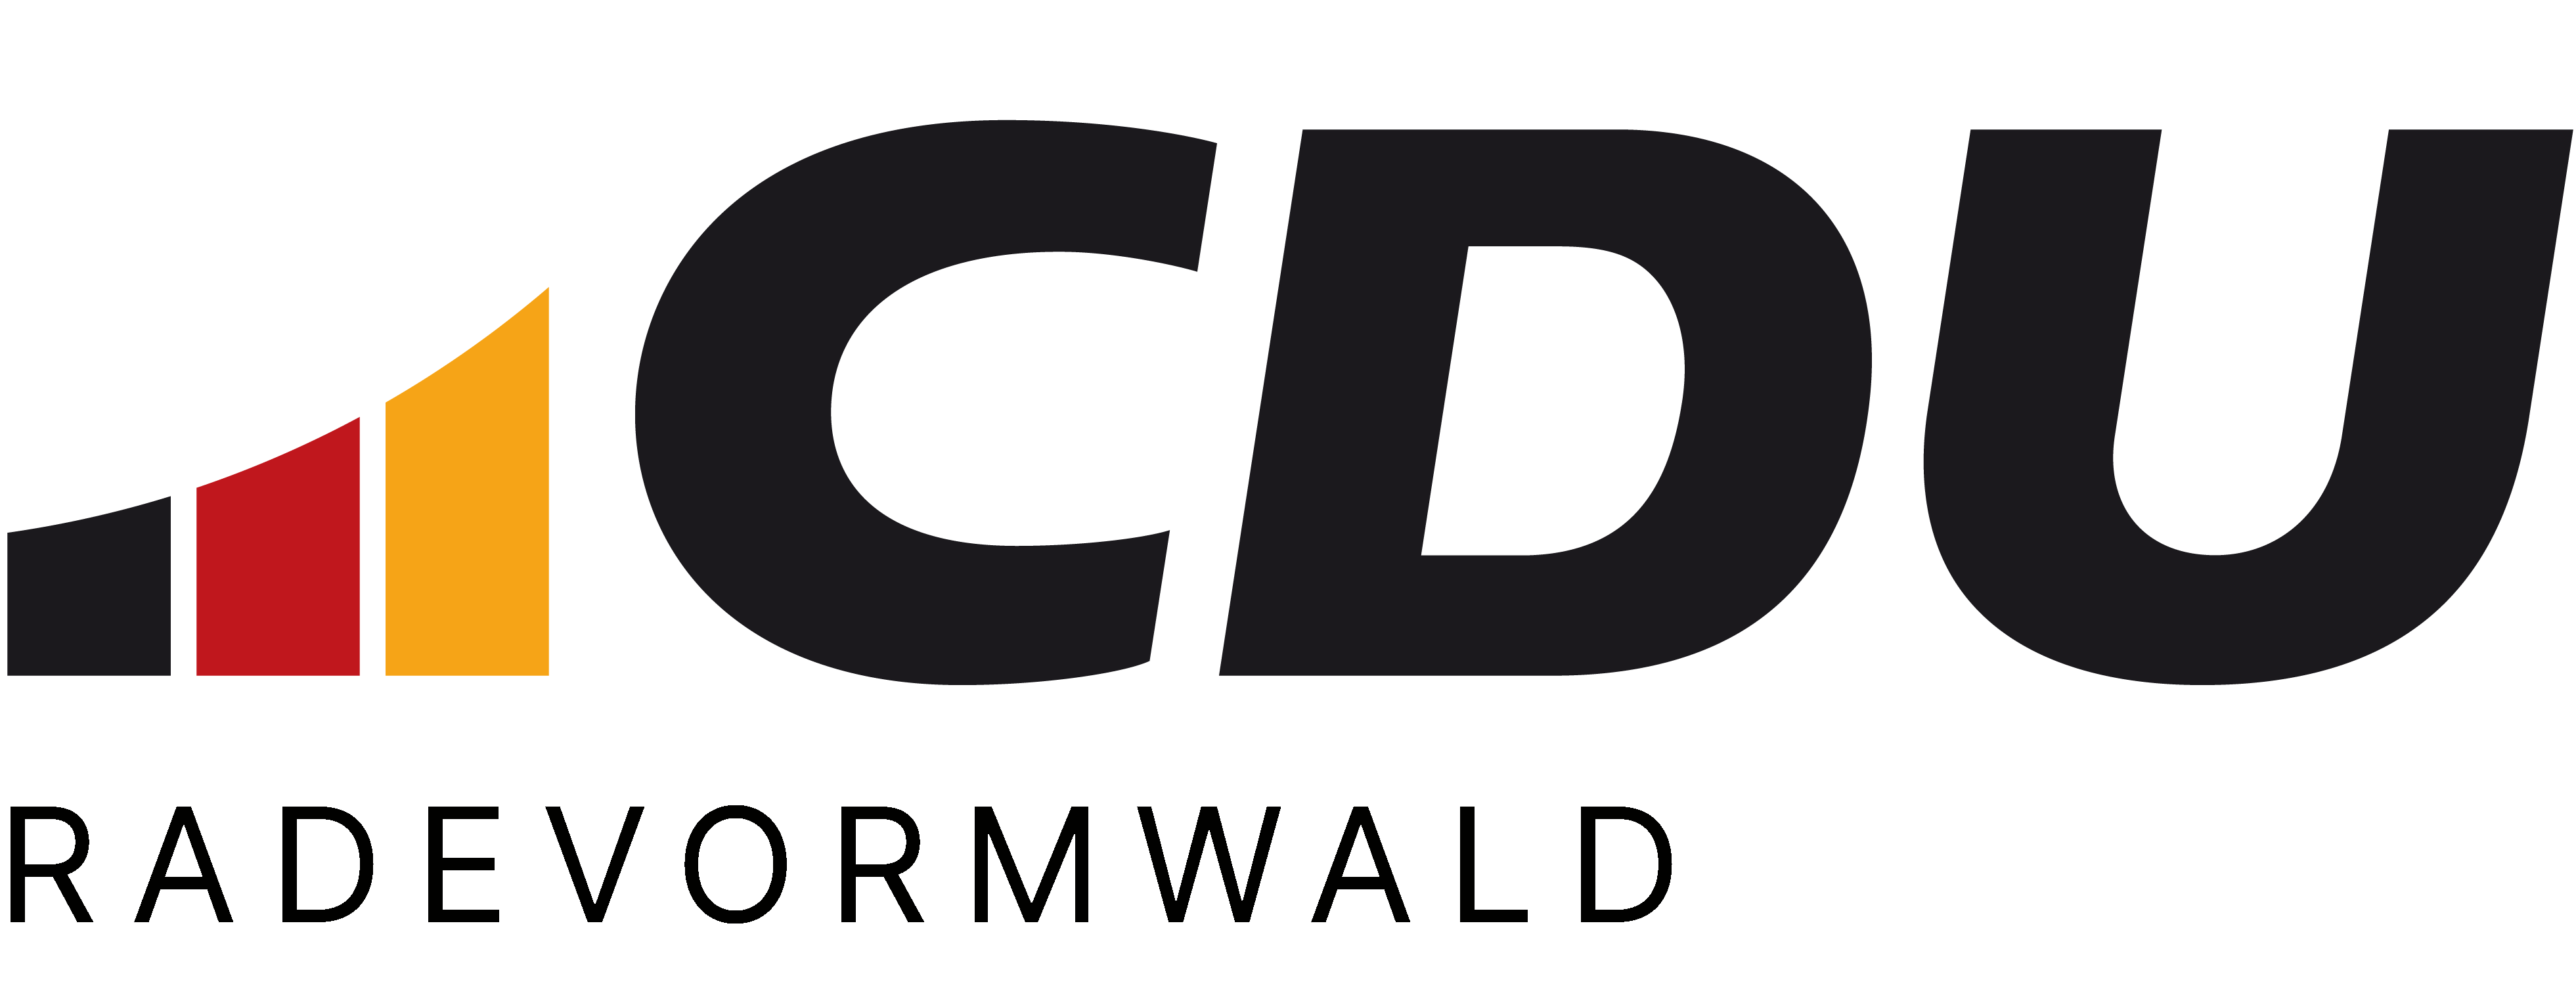 CDU Radevormwald